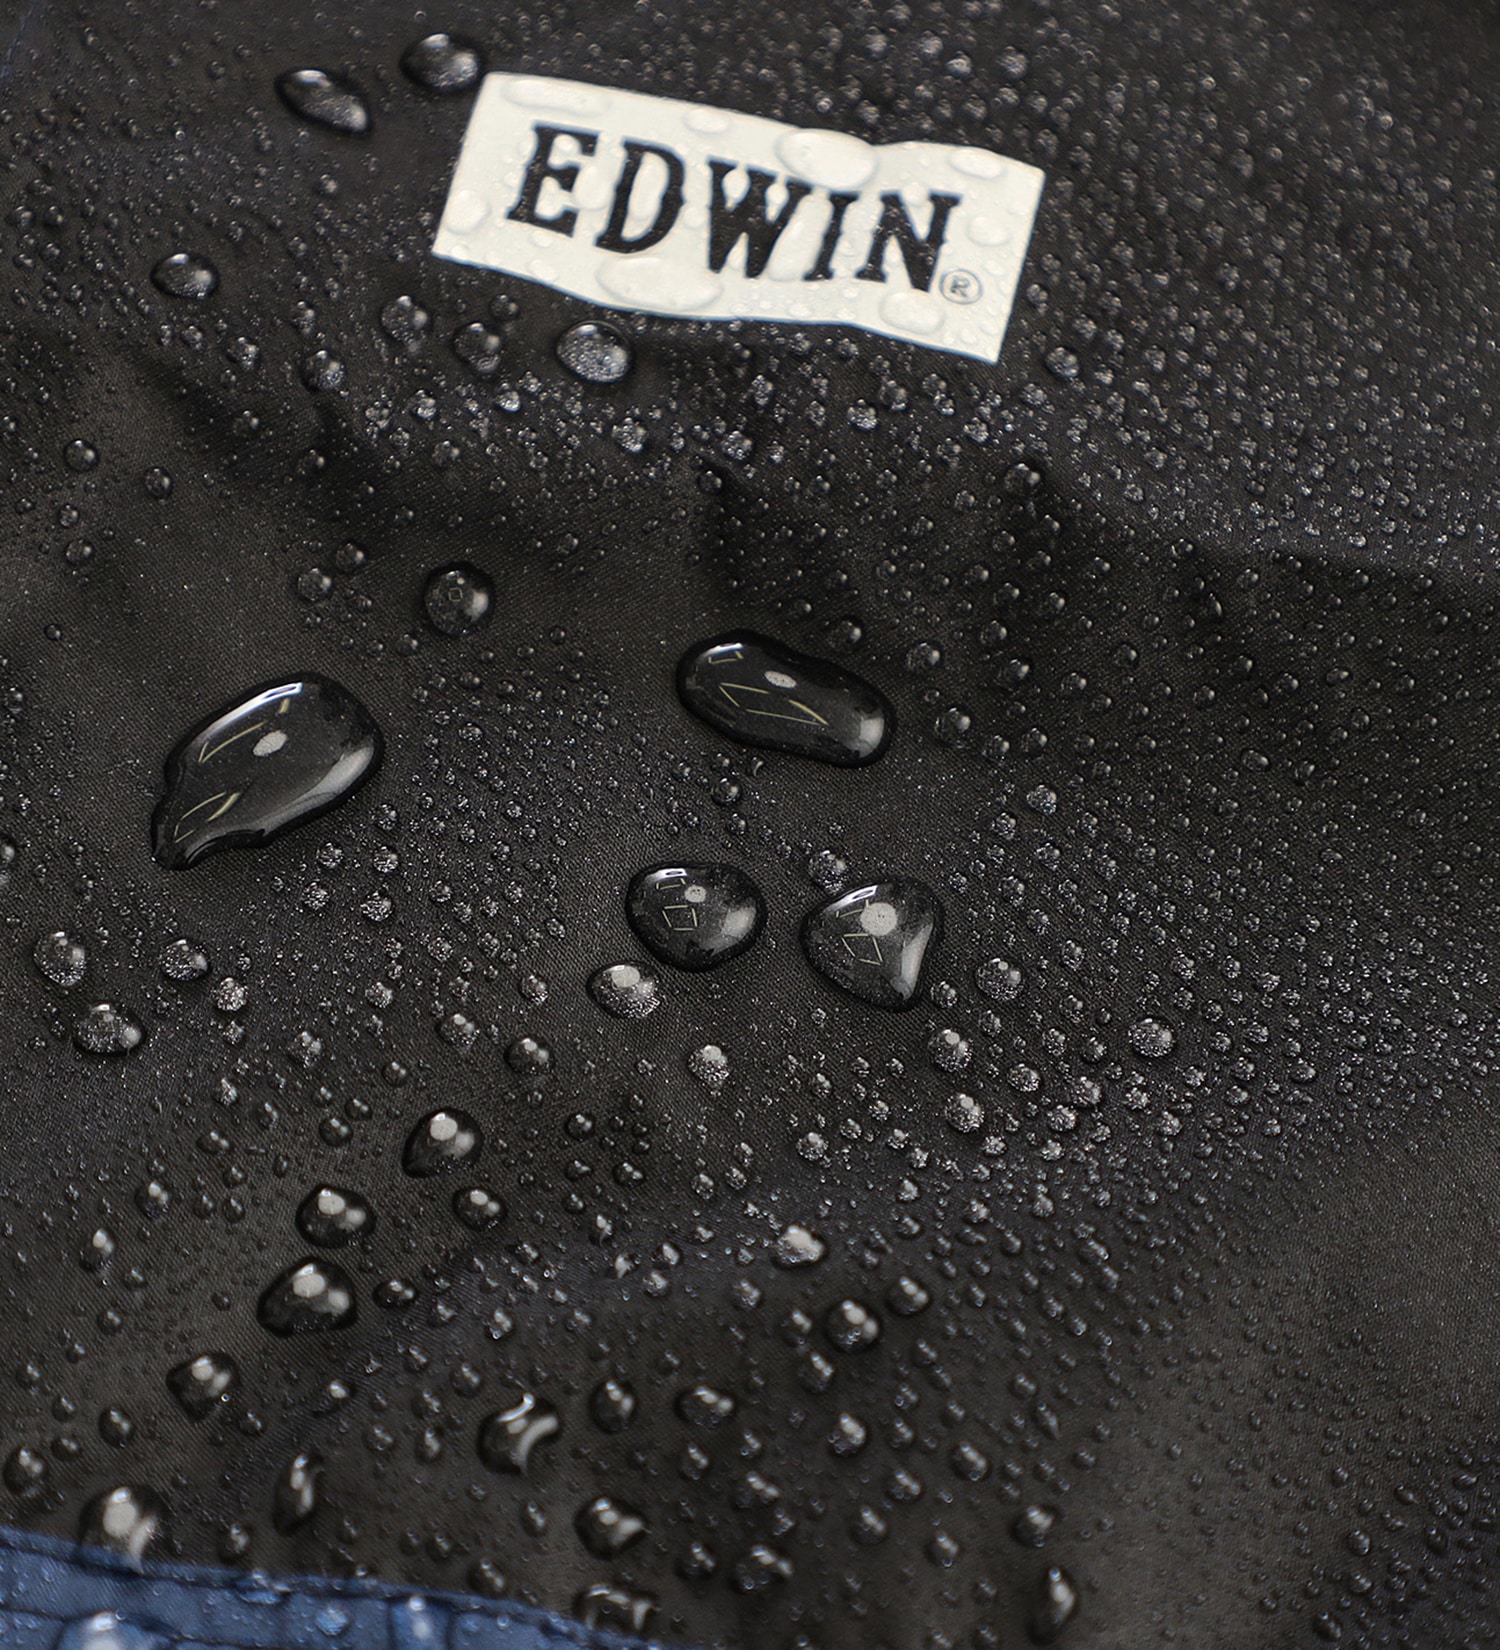 EDWIN(エドウイン)のEDWIN レインパーカー|ファッション雑貨/レインウェア/ポンチョ/メンズ|ネイビー